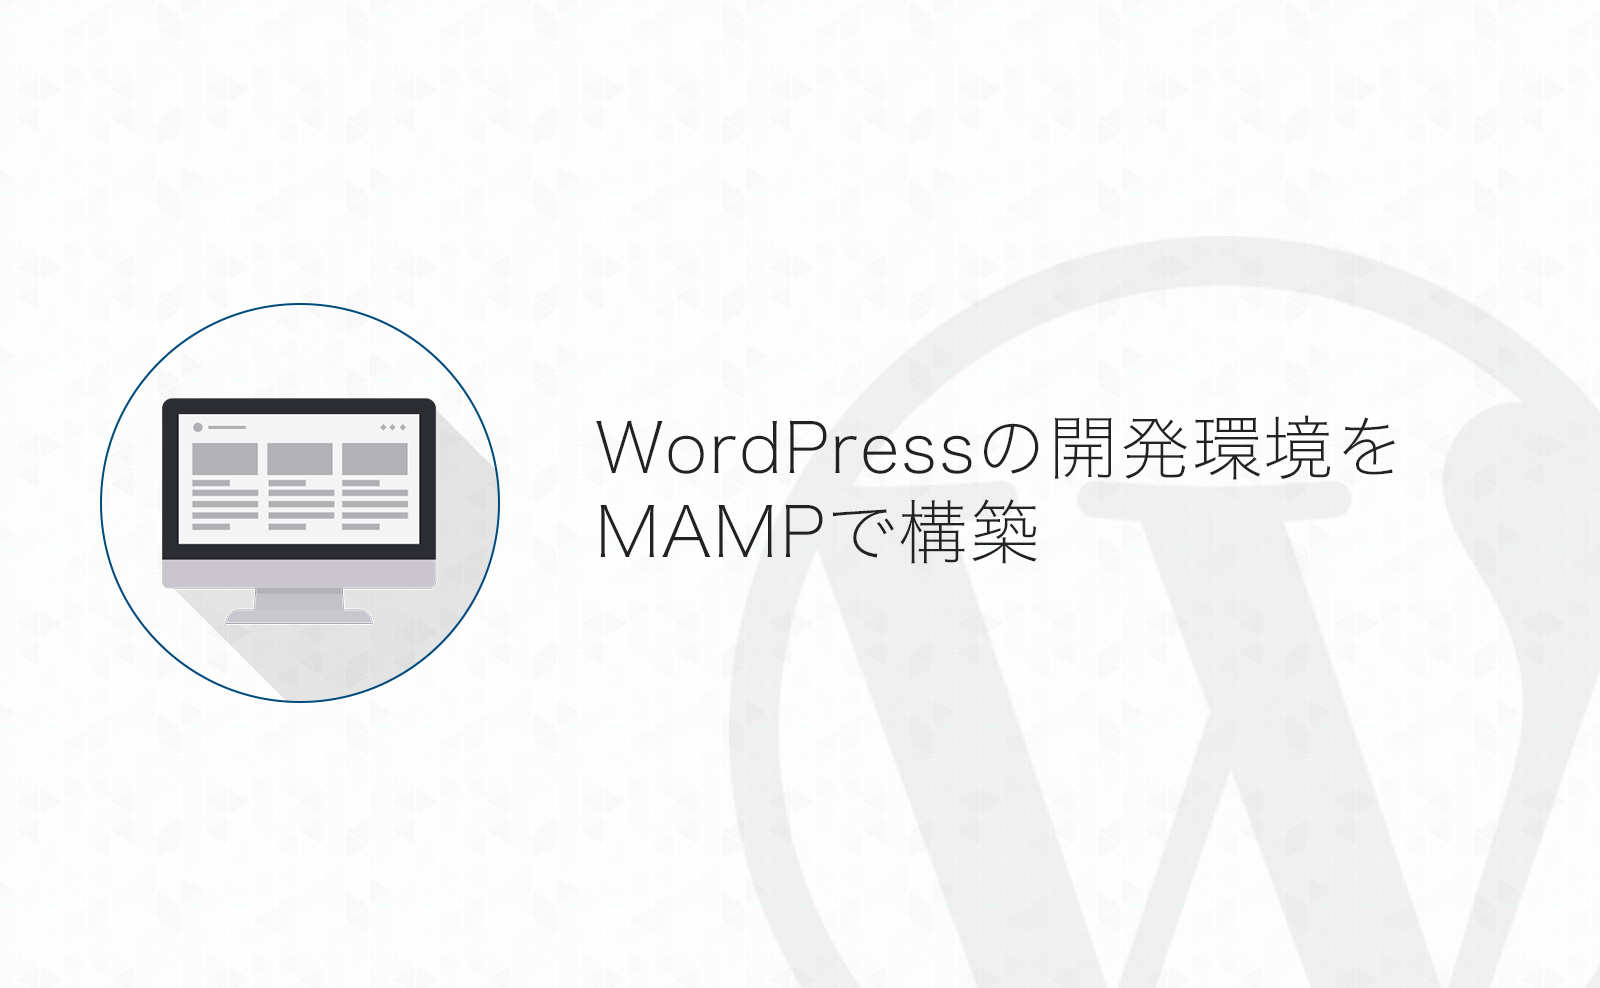 WordPressのローカル開発環境をMAMPでMacに構築する方法